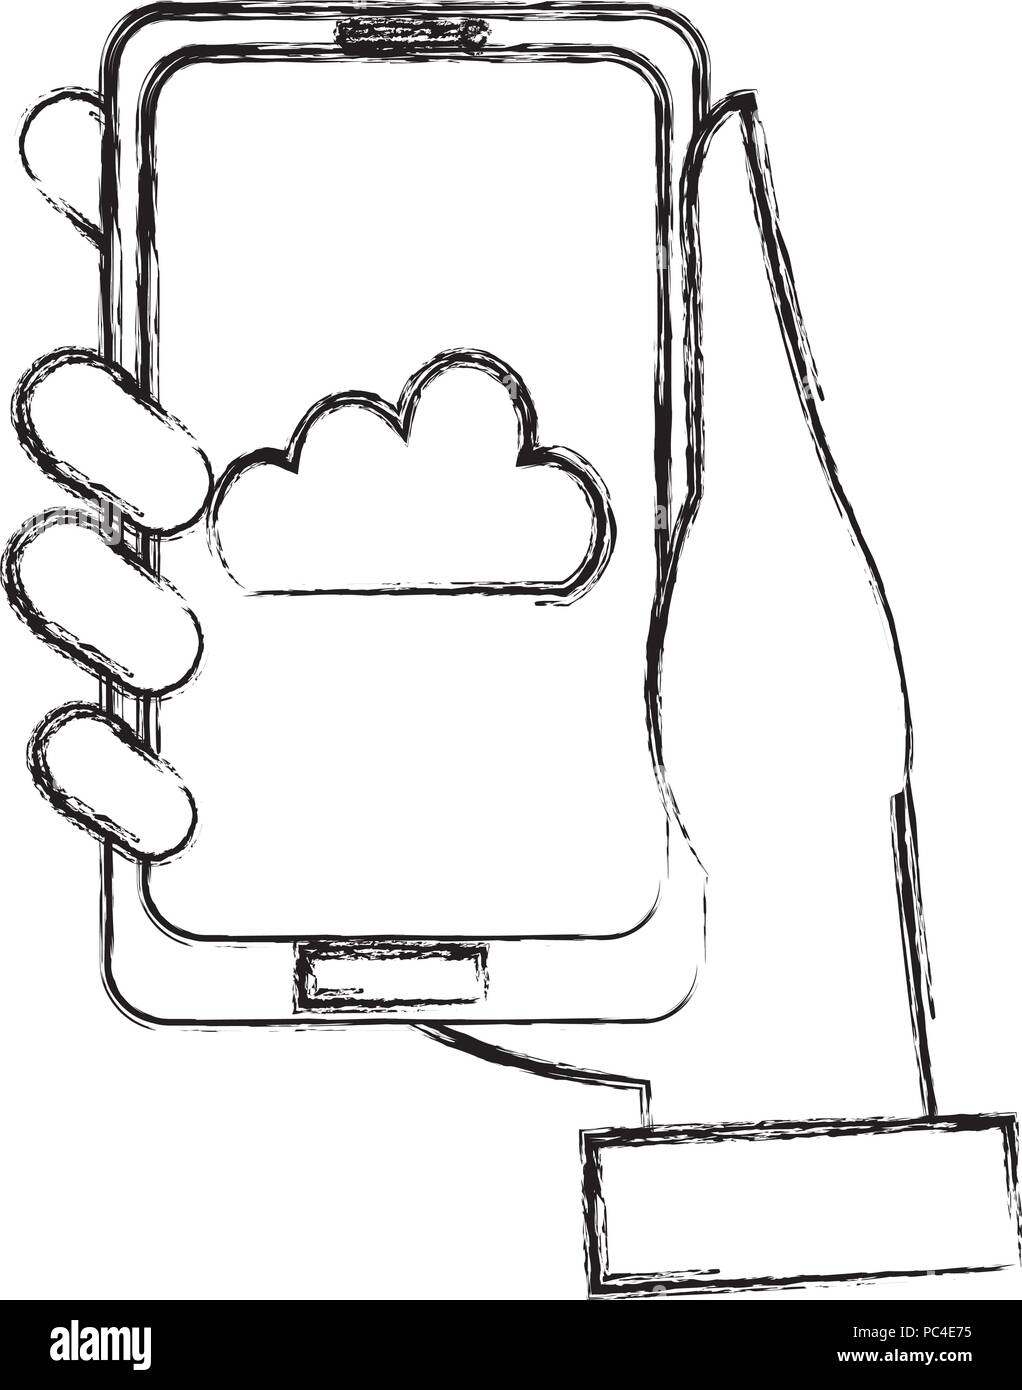 La main à l'aide du smartphone Blackberry avec l'informatique en nuage Illustration de Vecteur